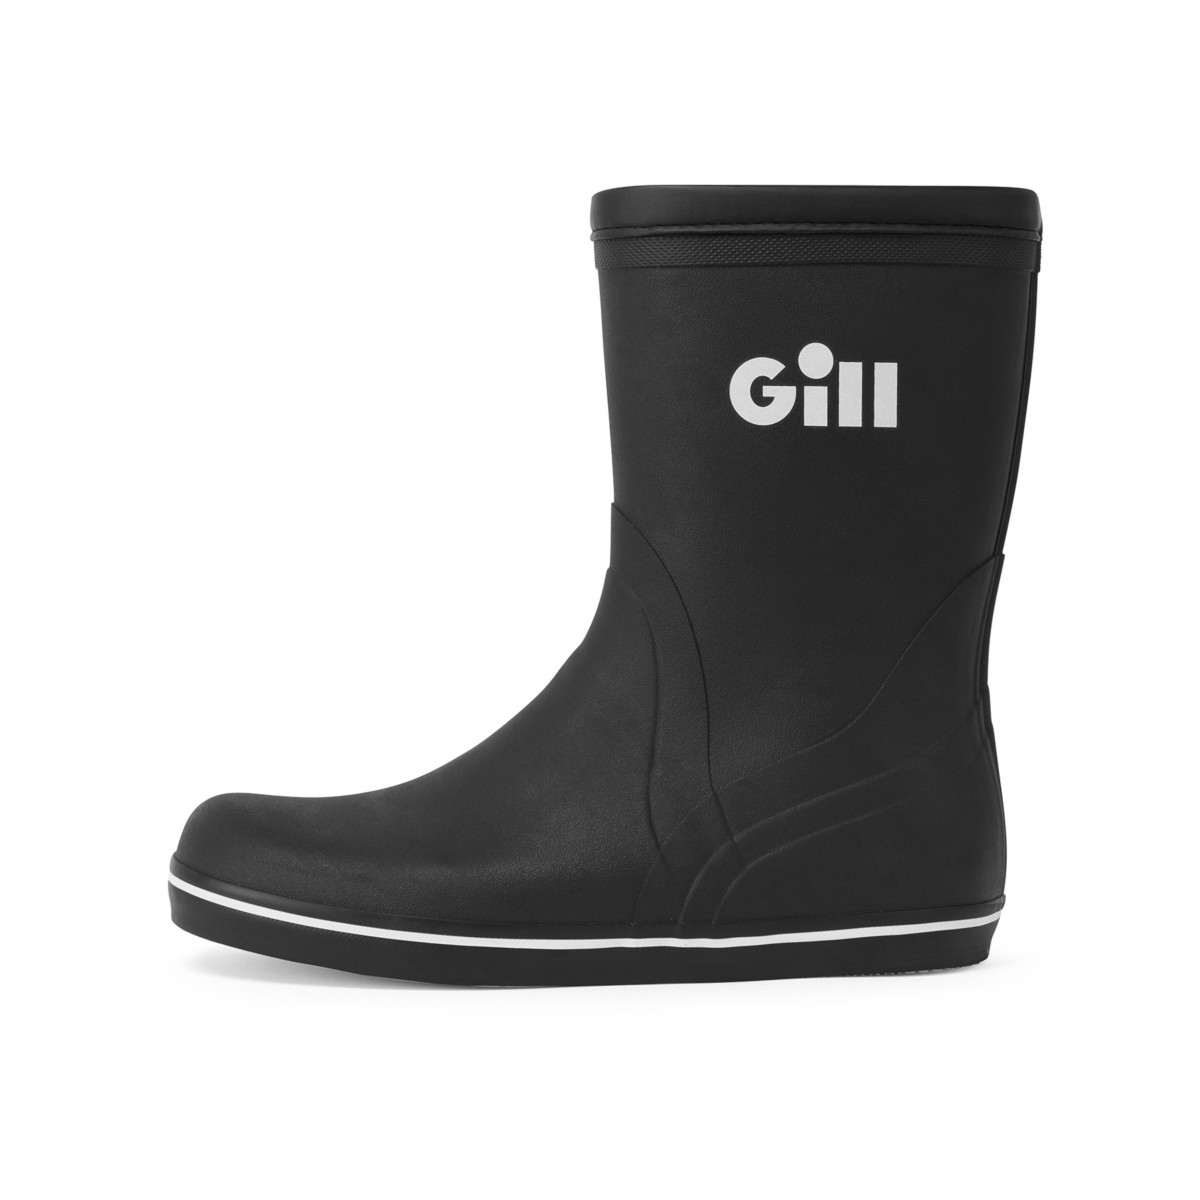 Gill Short Cruising Boot bottes en caoutchouc unisexe noir, taille 41